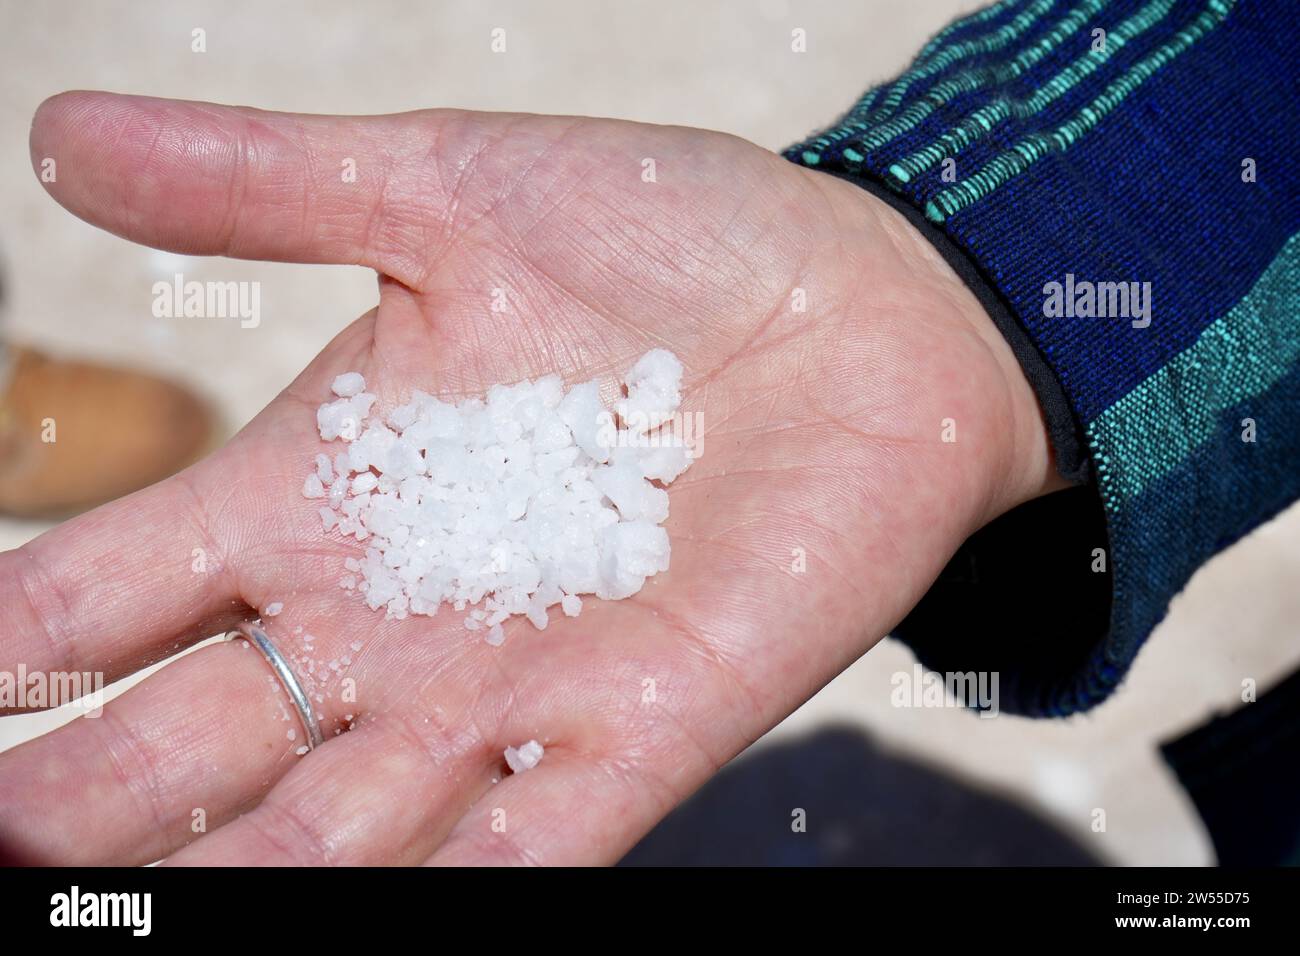 A hand holding salt from the Bolivian Salt Flats. Stock Photo